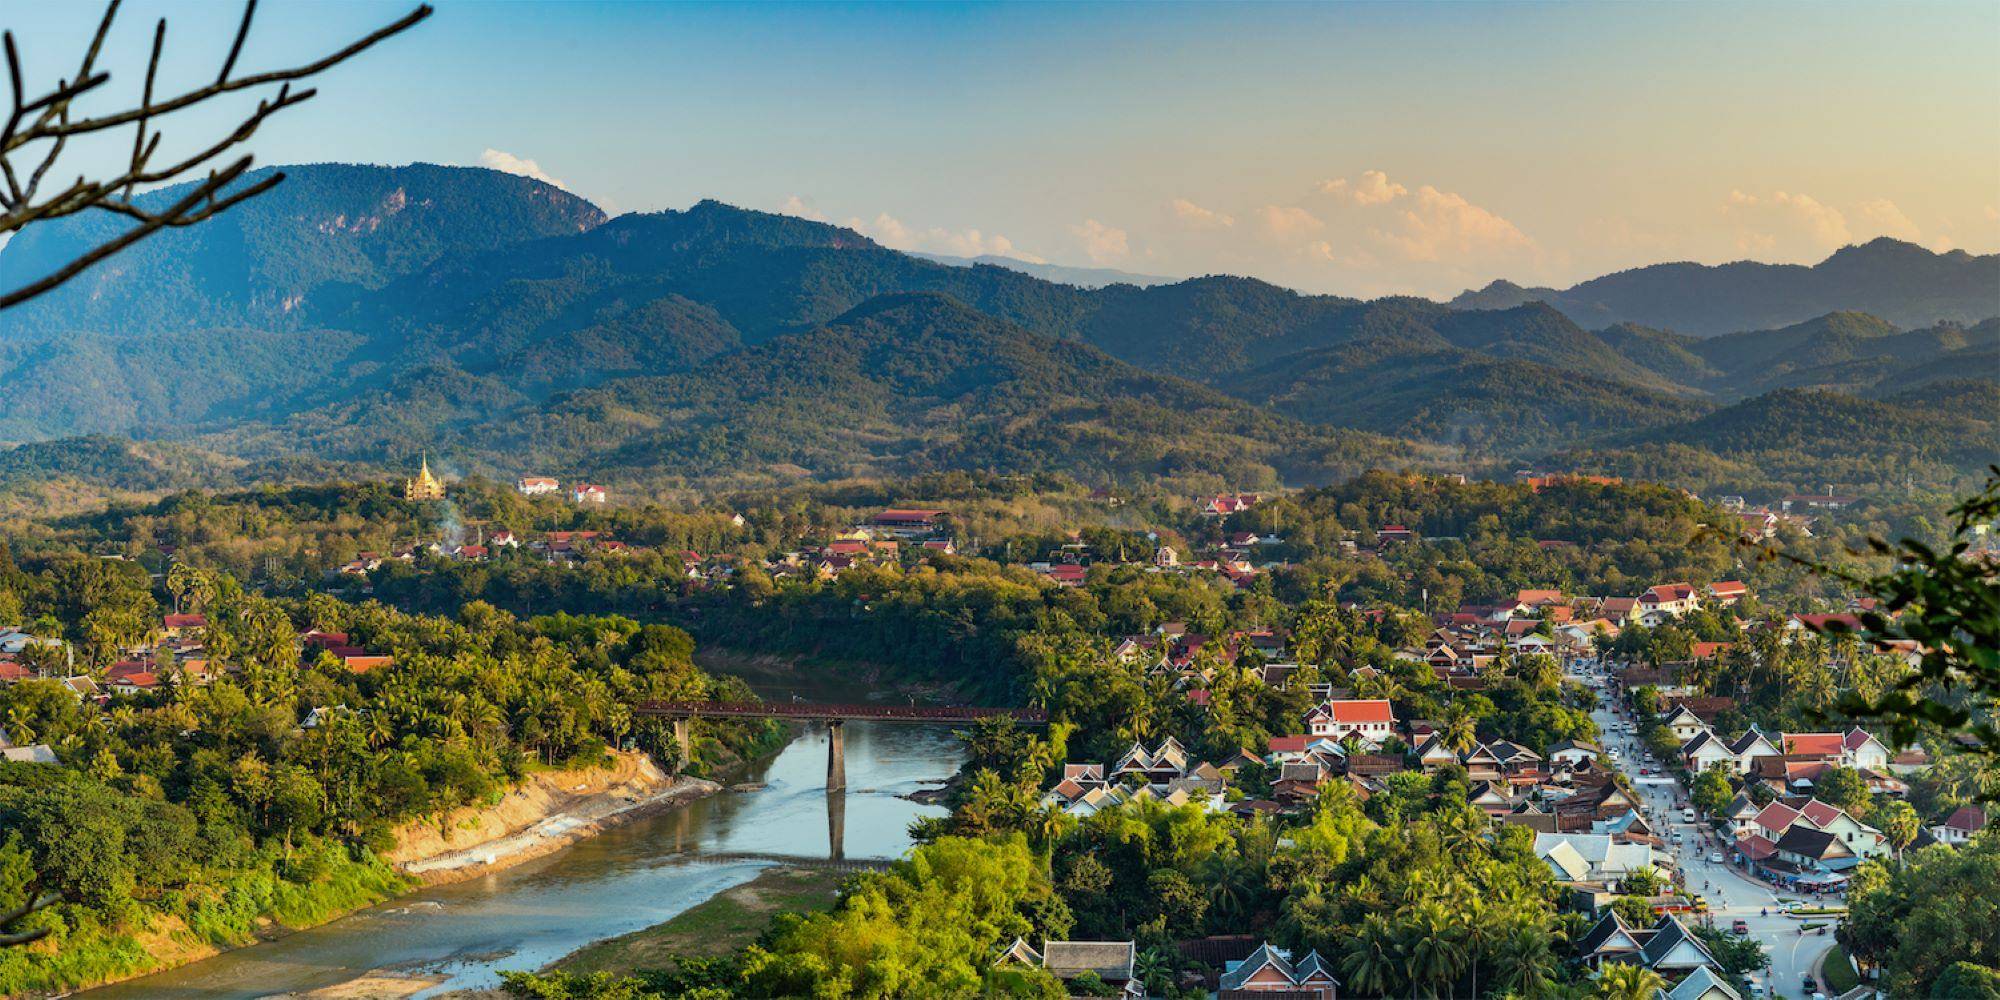 Laos abseits ausgetretener Touristenpfade